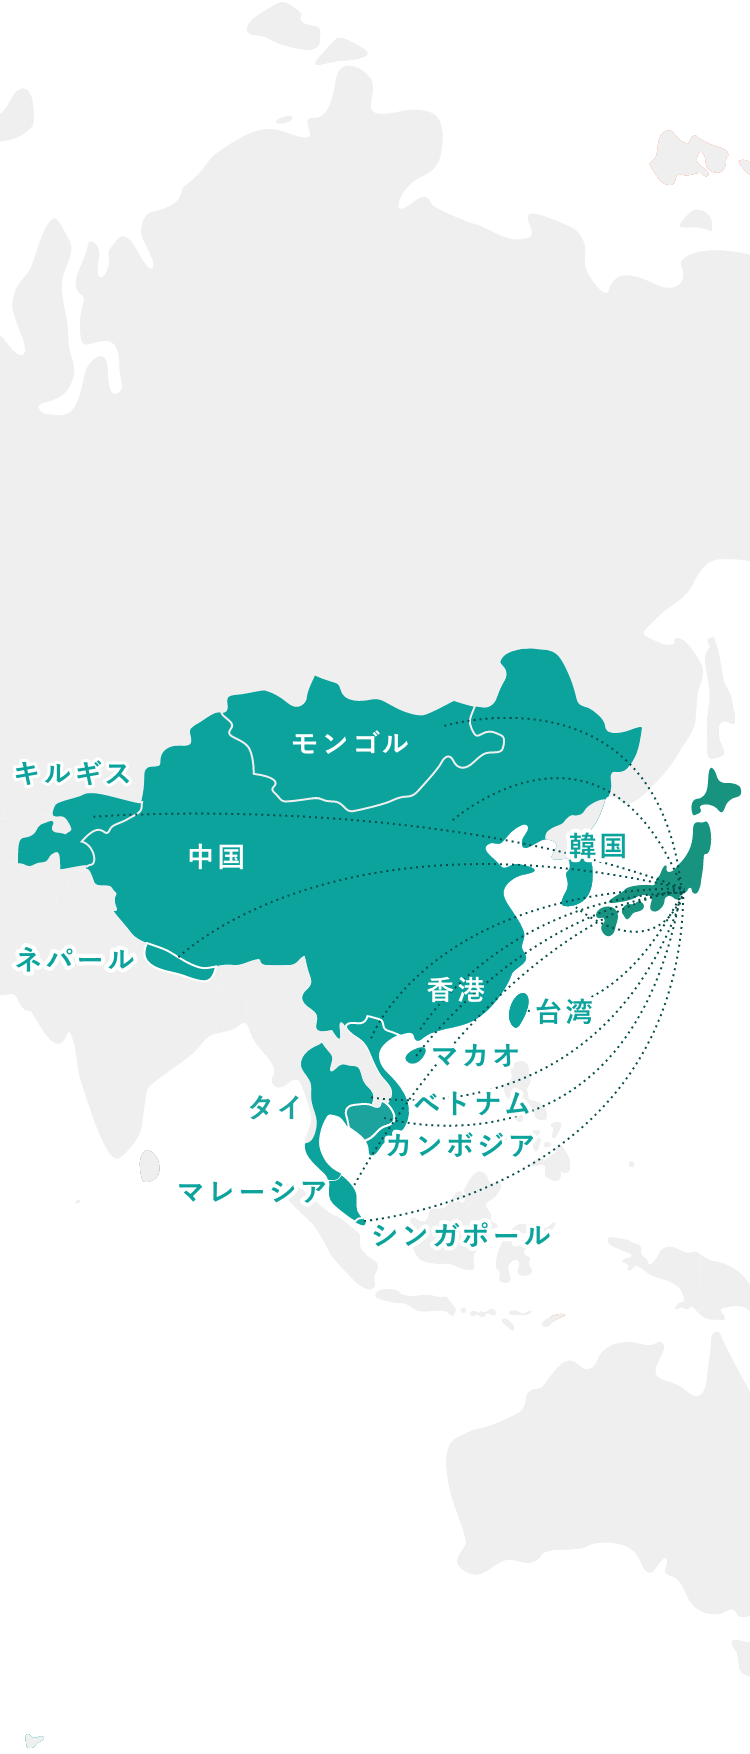 グローバルネットワークを活用したアジア展開